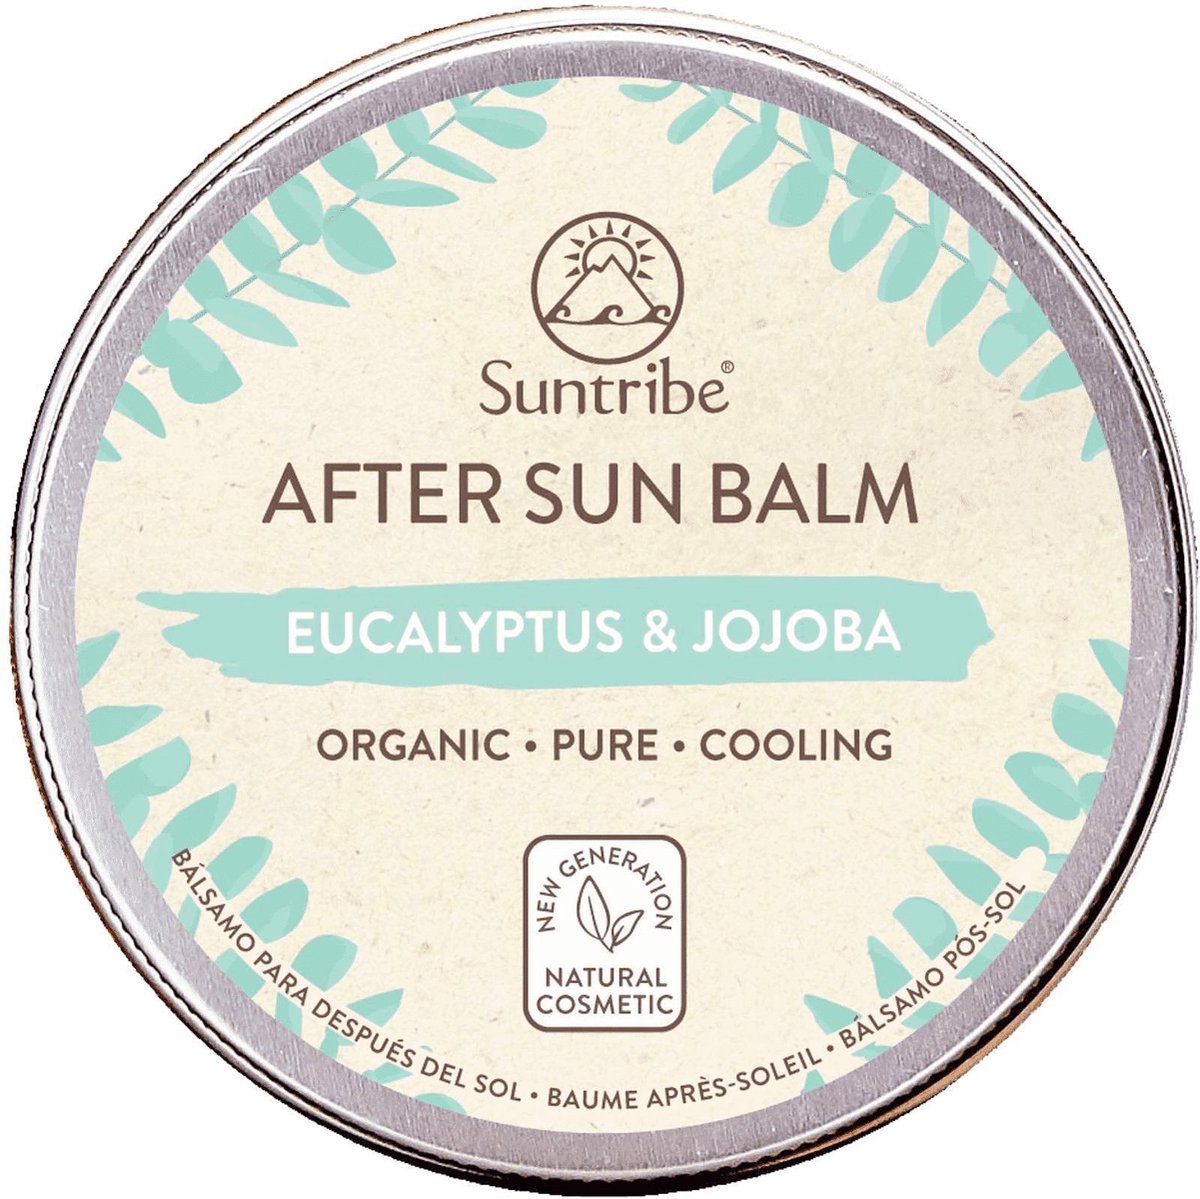 After Sun Balm - Eucalyptus & Jojoba